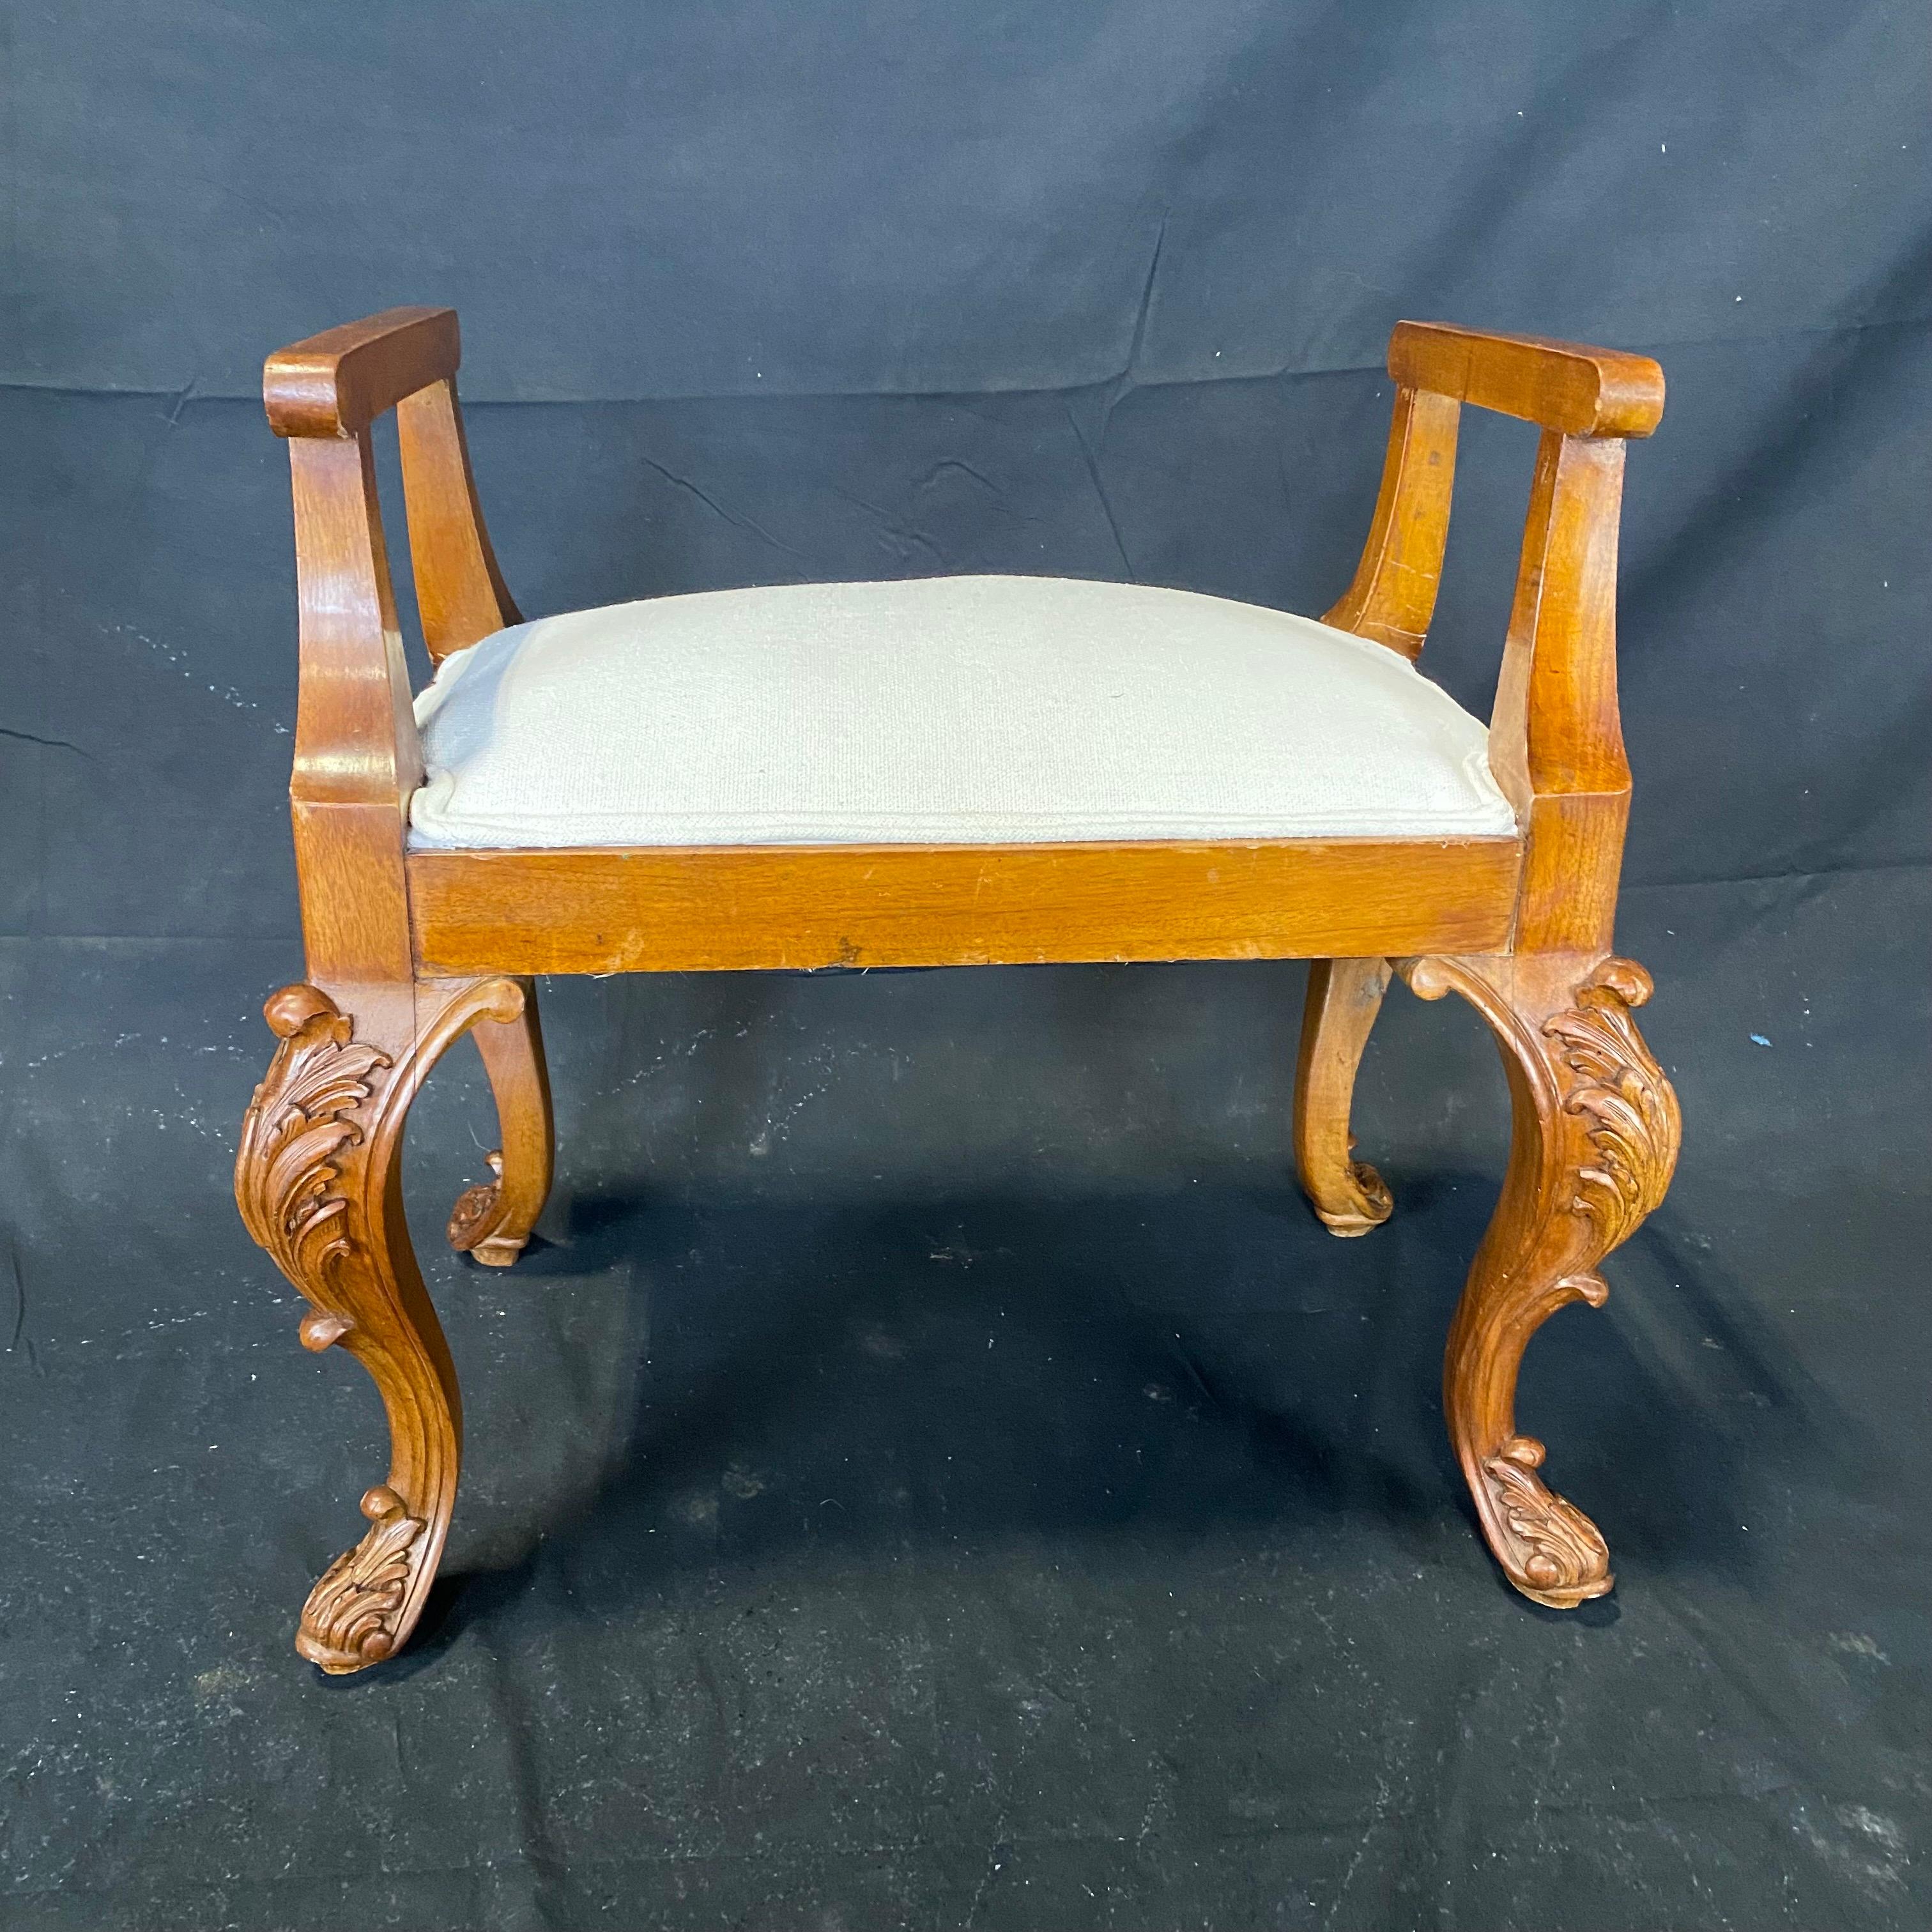 Nouvellement retapissé dans un magnifique mélange de lin et de coton, ce bel ensemble chaise et ottoman en noyer français présente des détails sculptés à la main de style Louis XV. Can peut être utilisé séparément ou ensemble, mais crée un joli